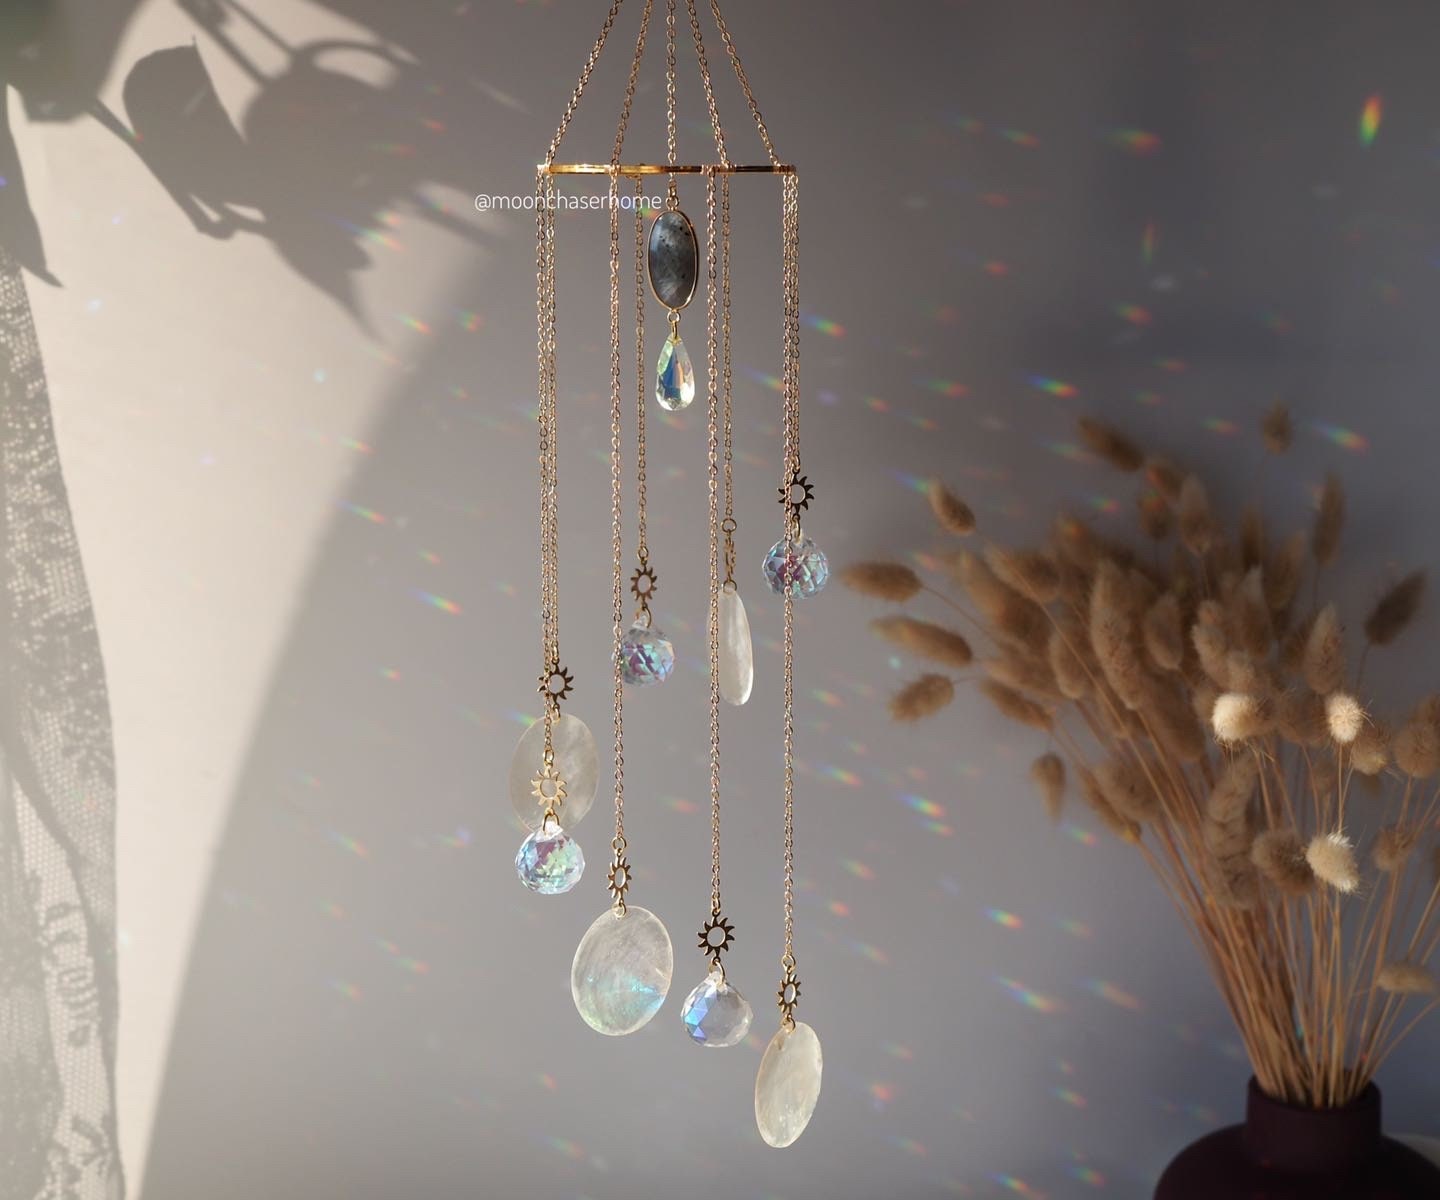 Suravi Sun catcher+crystals, Housewarming gift-wind charm elegant spiral sun catcher, rainbow prism,window decoration, Birthday gift